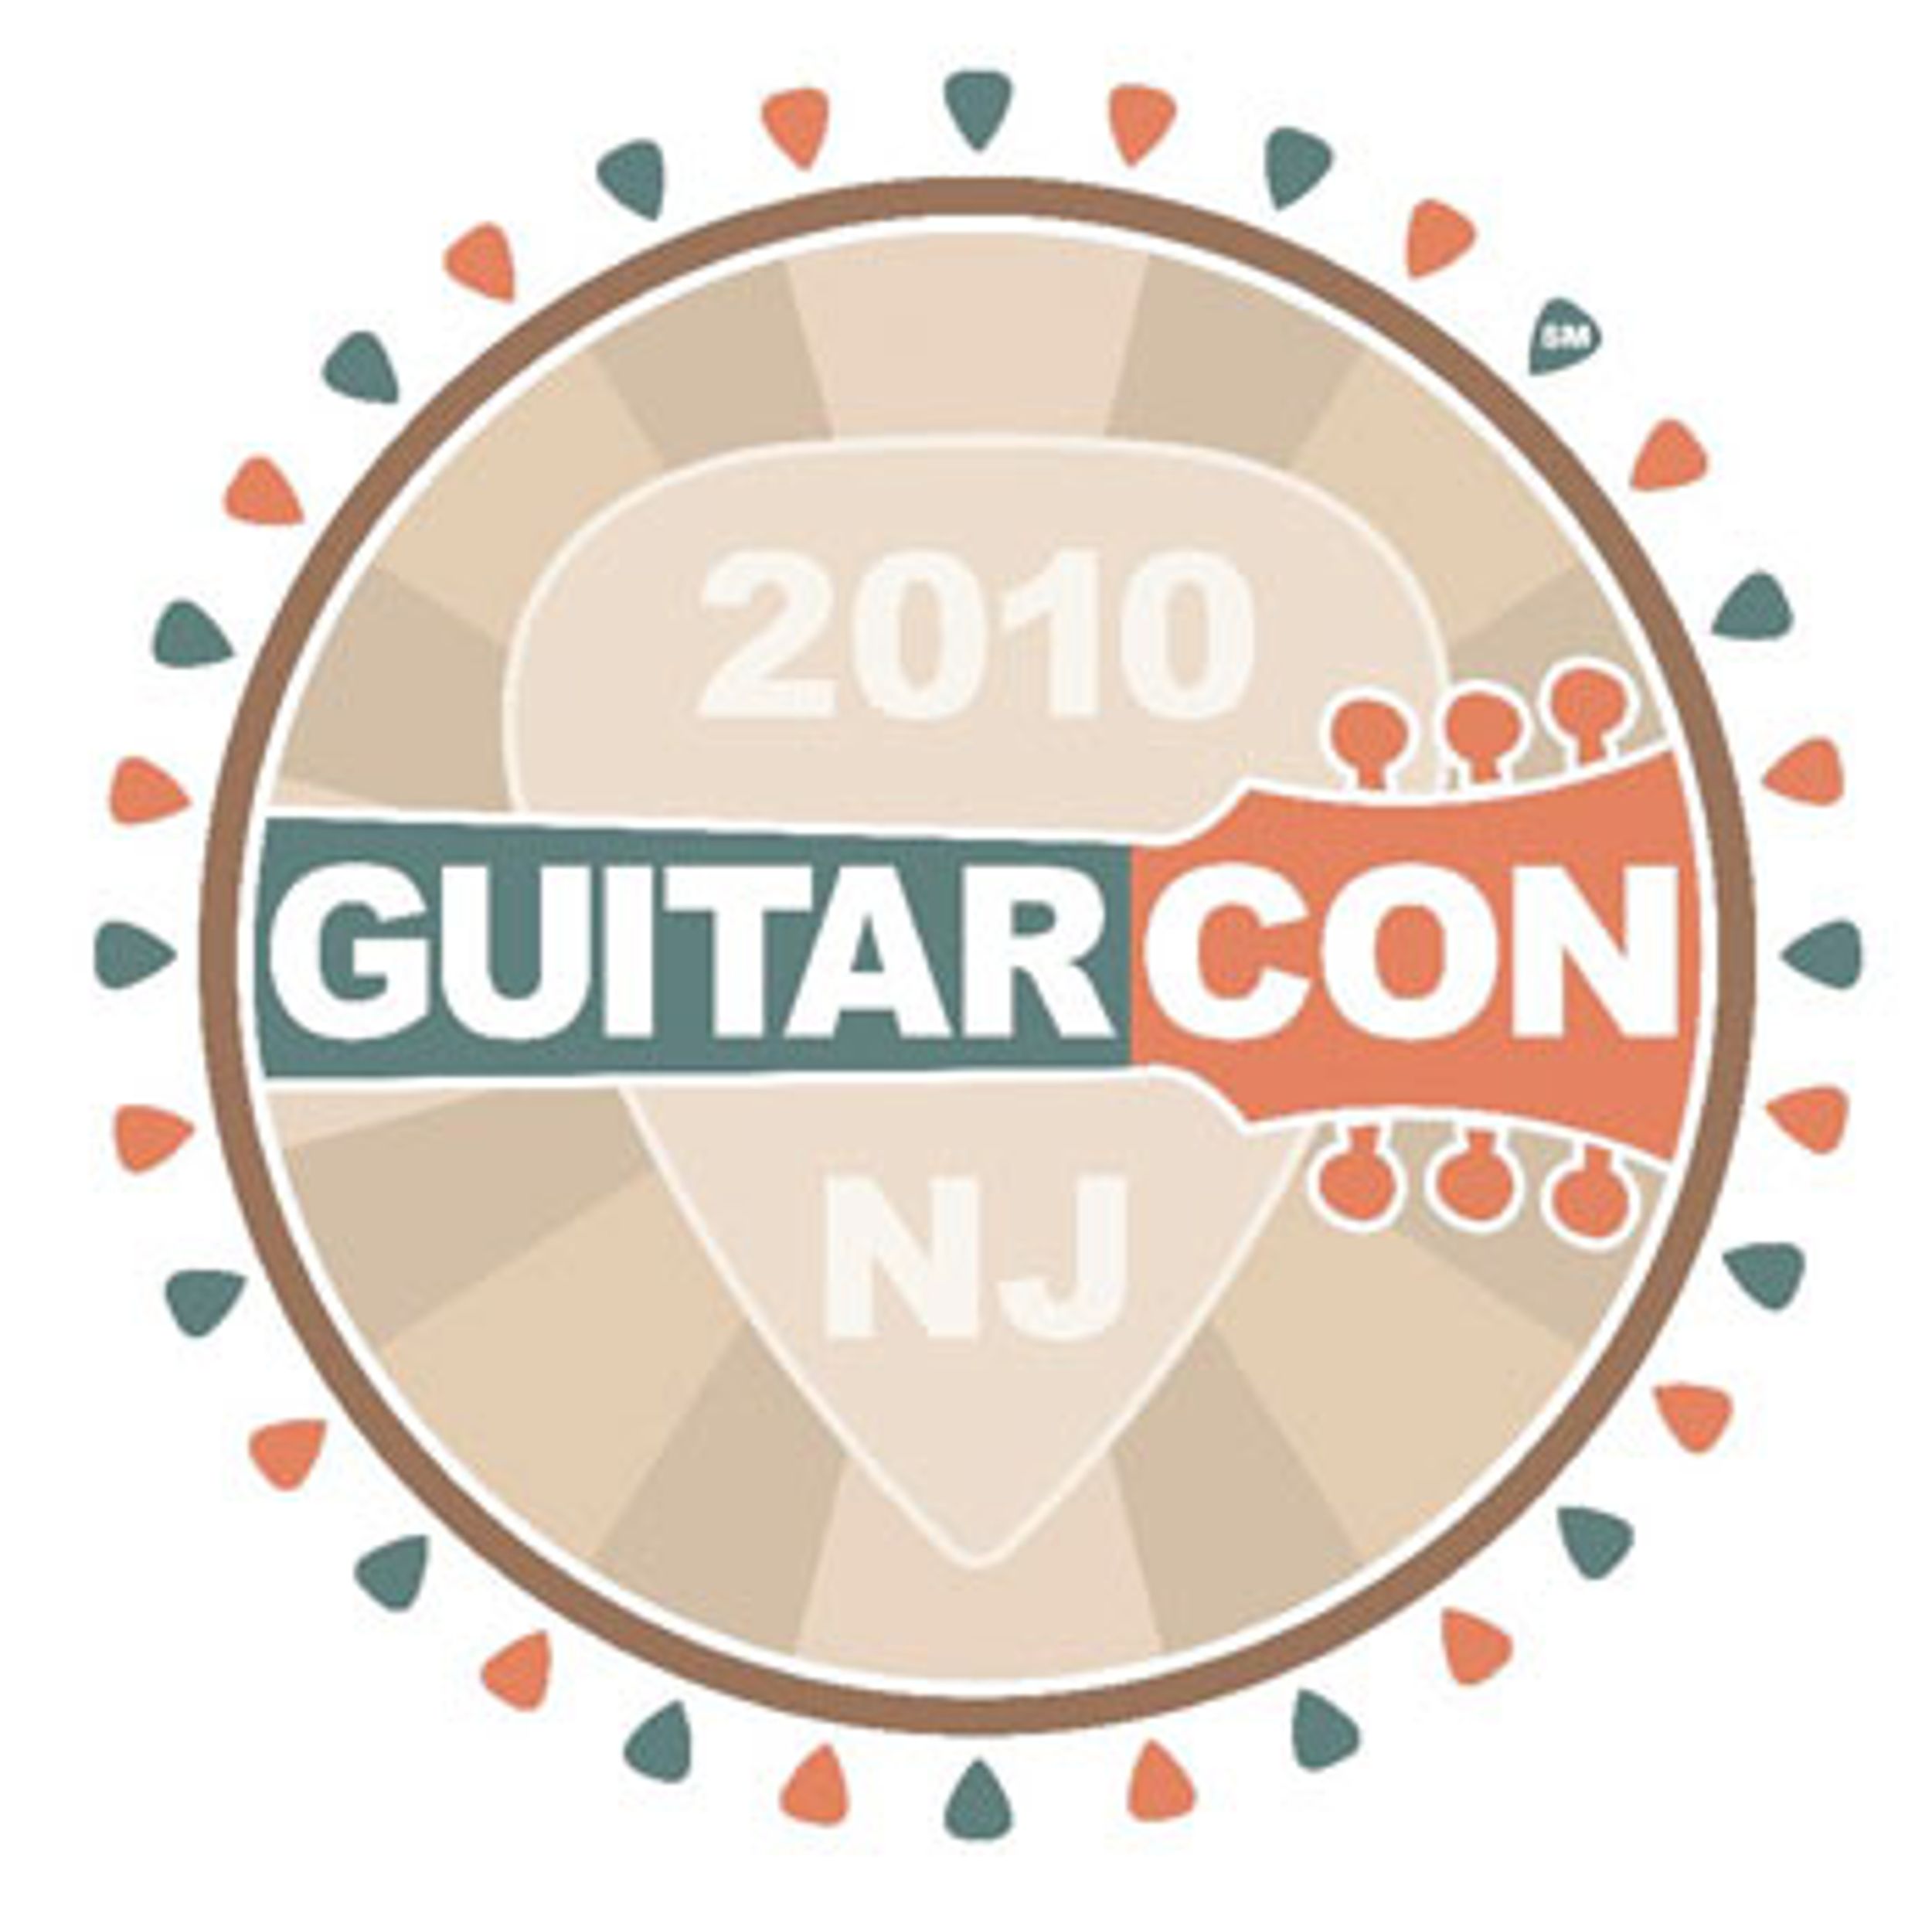 Guitar Con 2010 Announced